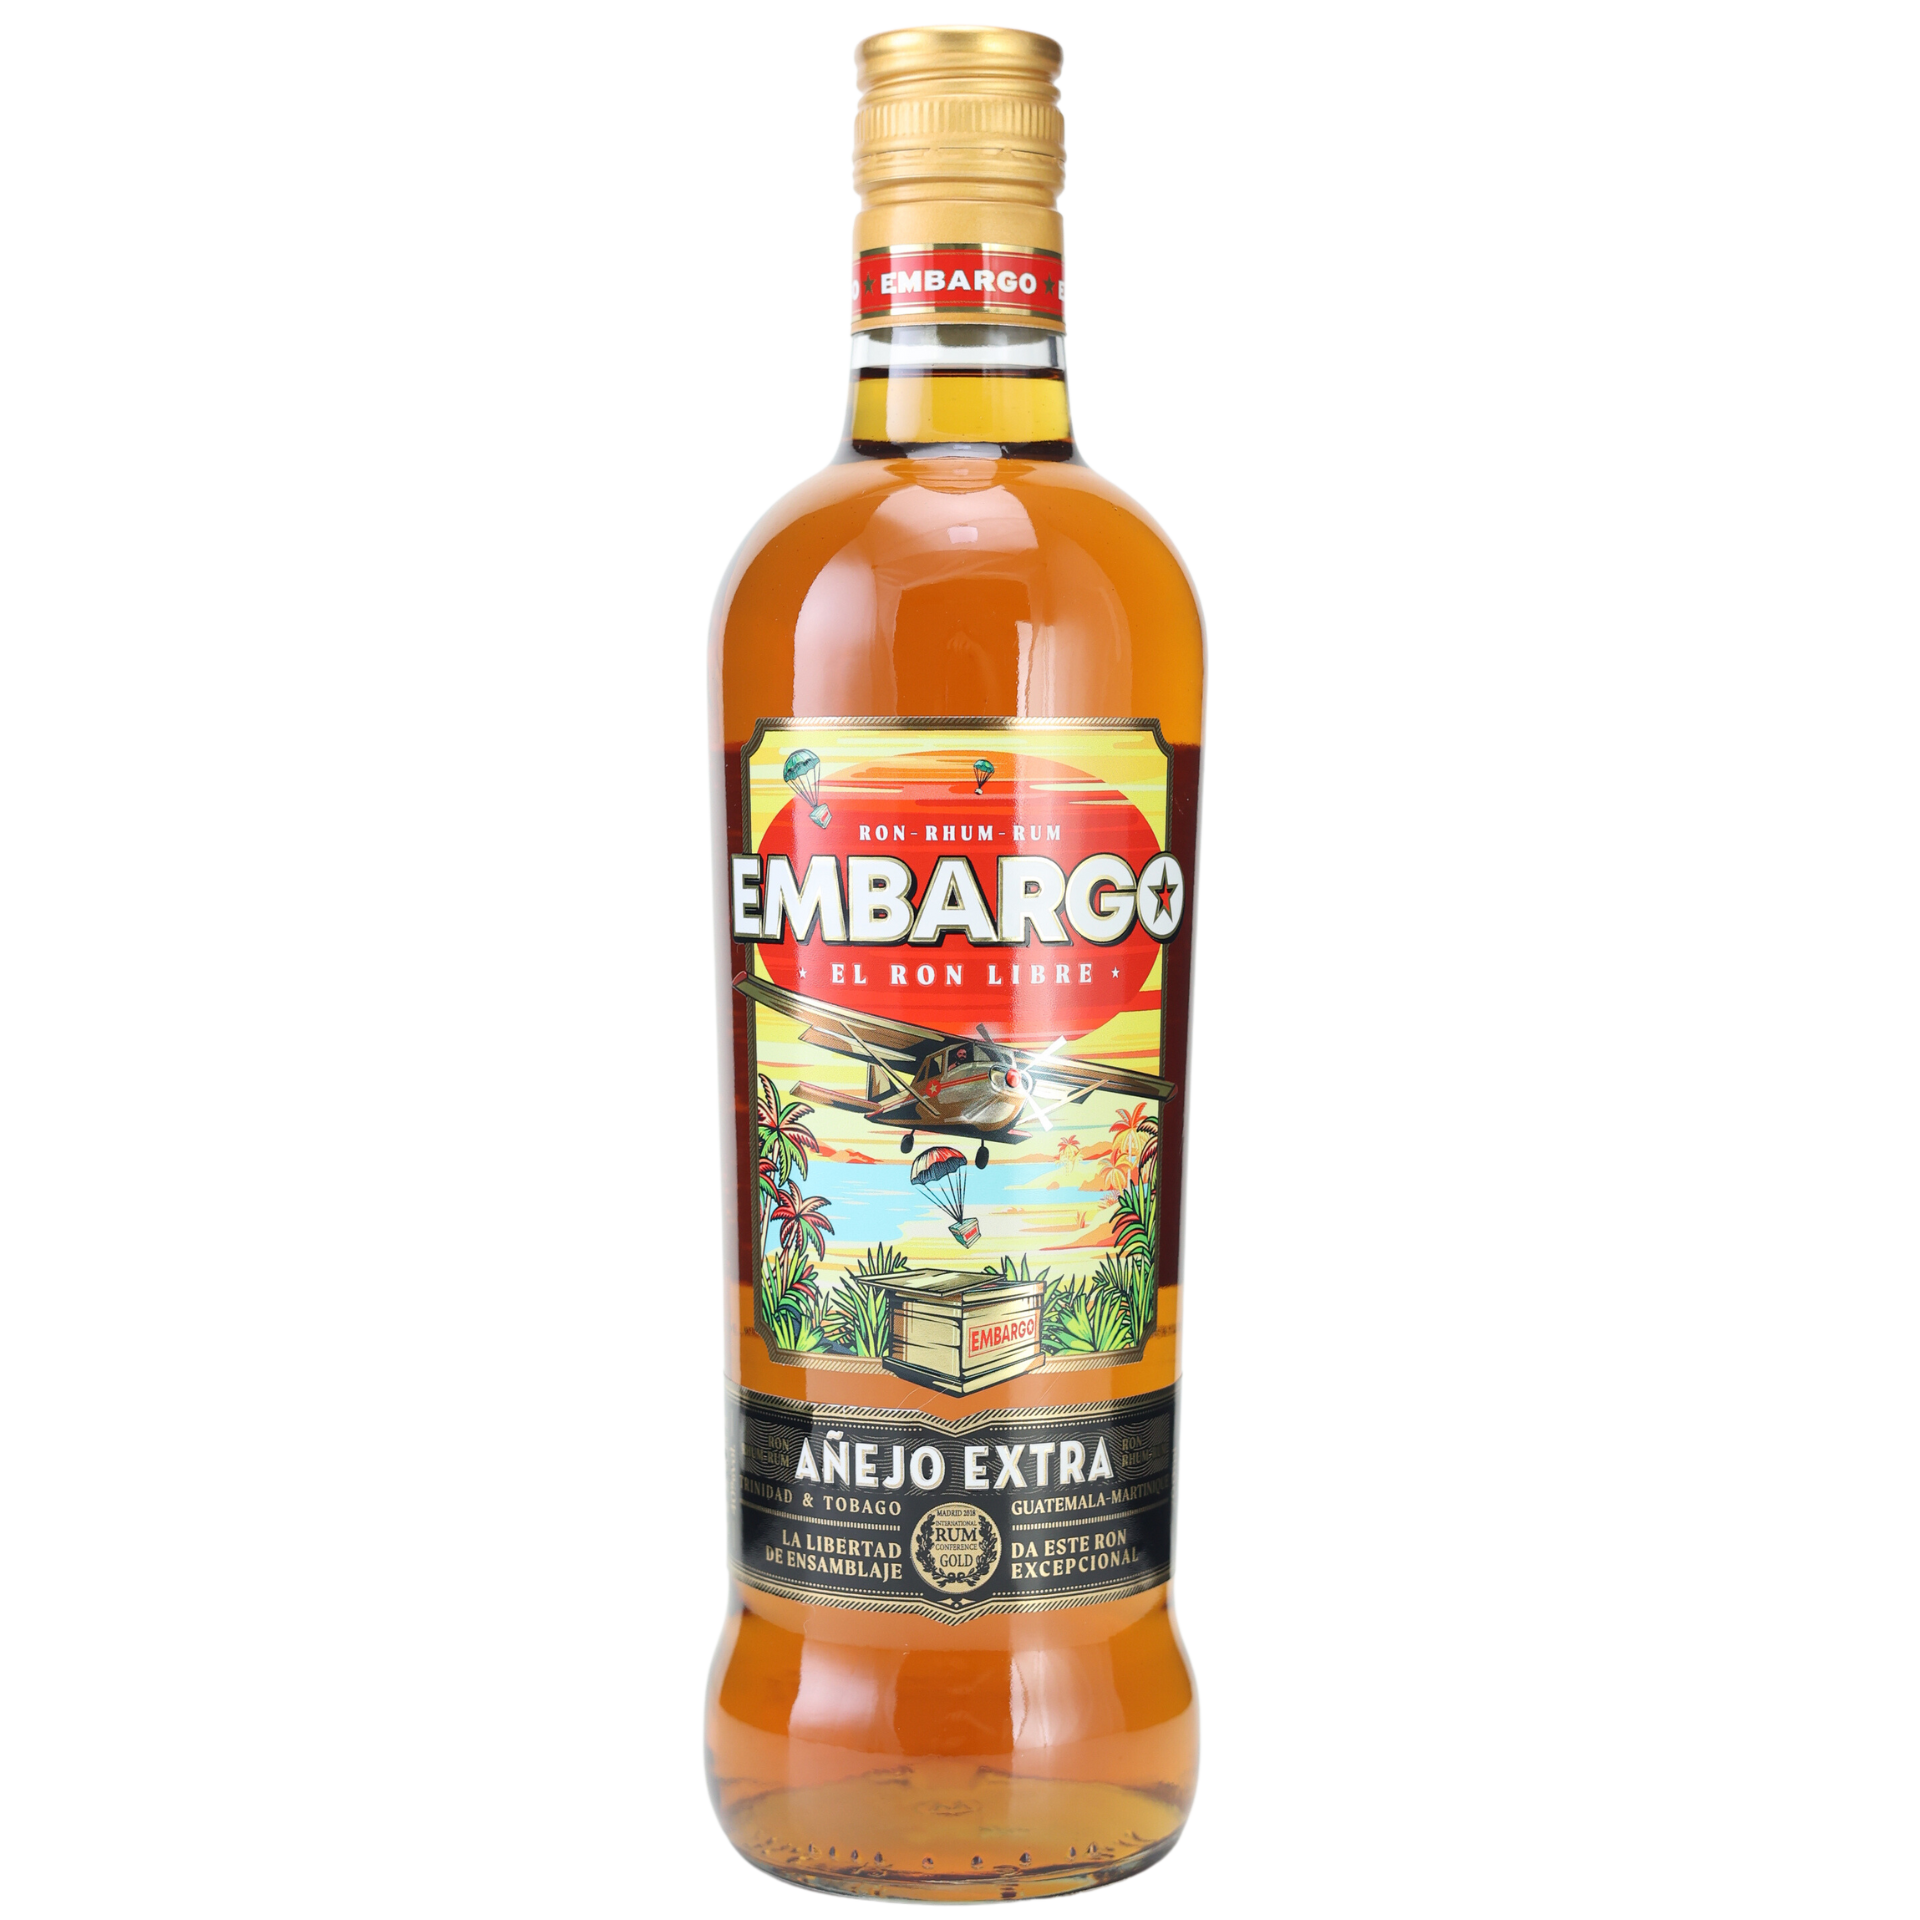 Embargo Anejo Extra Rum 40% 0,7l